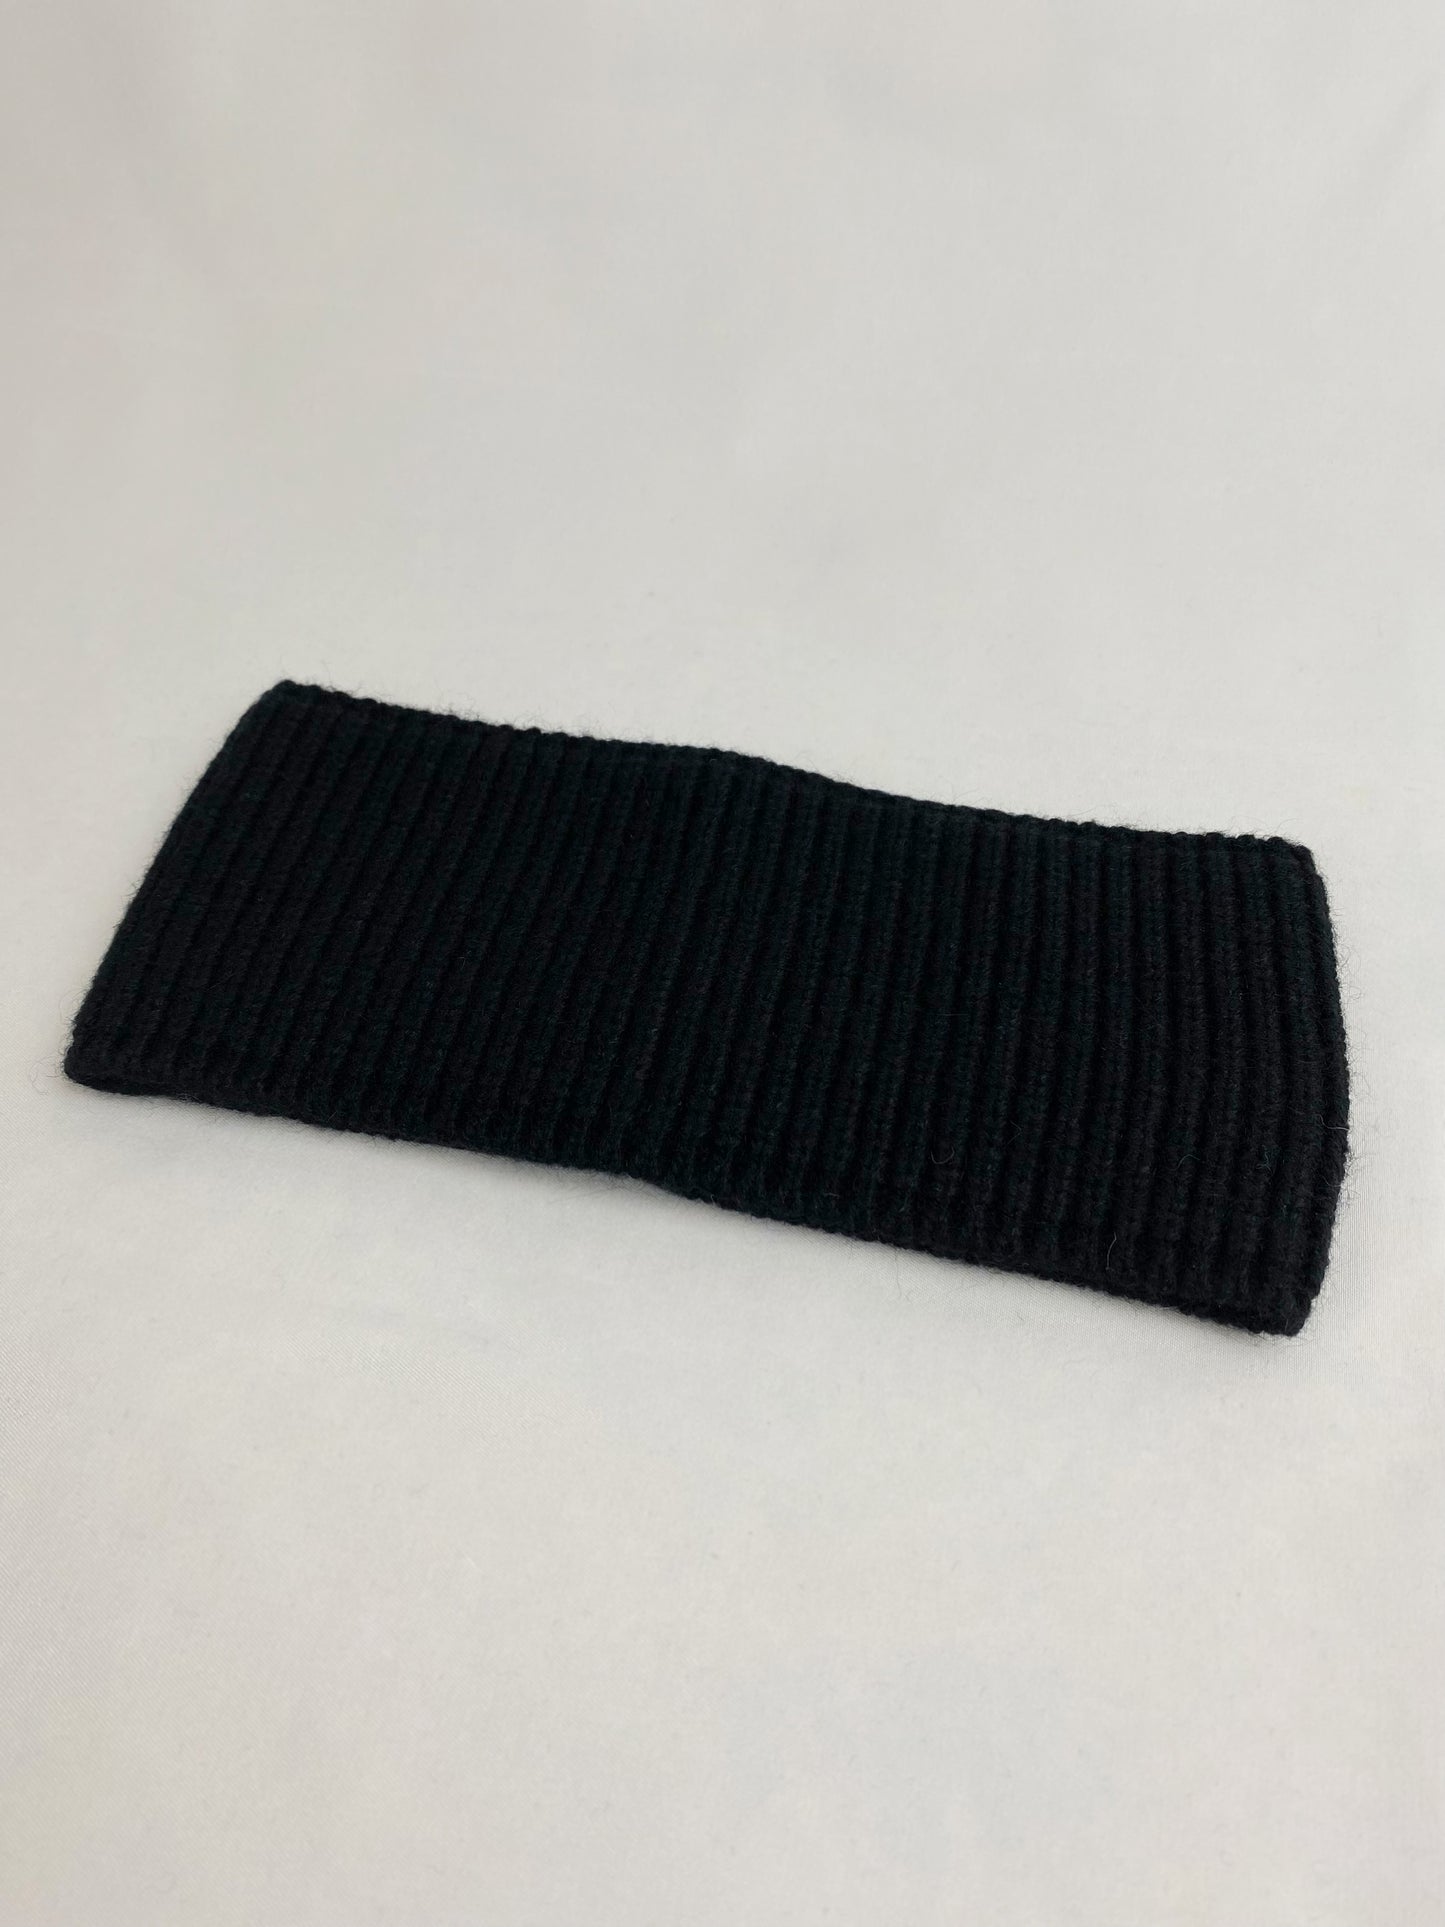 nachhaltige plastifreie kaschmir cashmere stirnband minimalistisch basic schwarzqualität